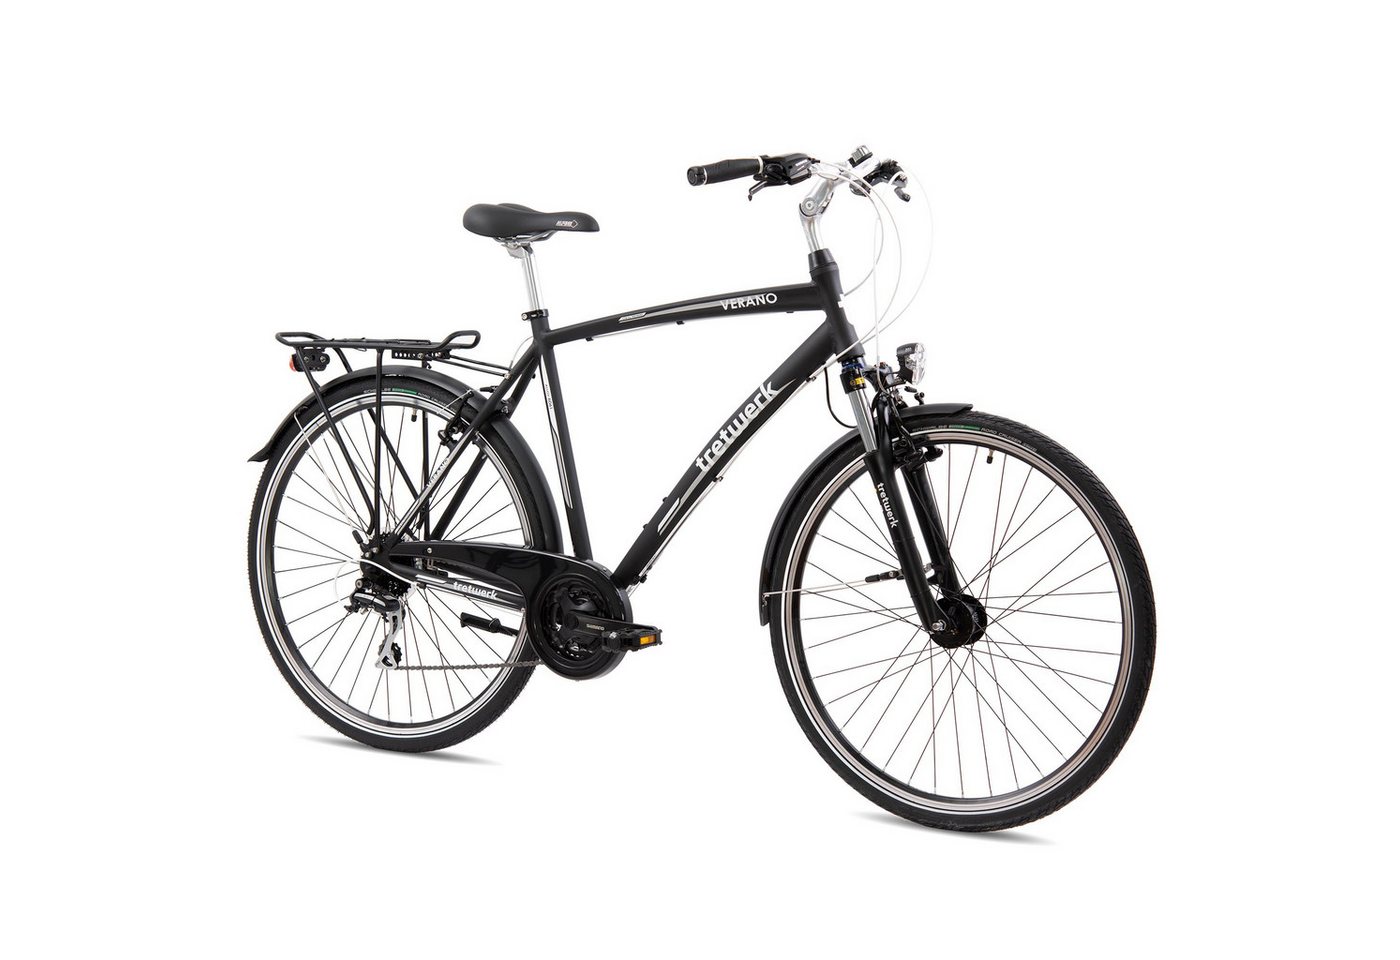 Tretwerk Cyclocross-Rad Verano, 24 Gang Shimano Acera M360 Schaltwerk, Kettenschaltung, Tretwerk Verano Citybike 28 Zoll Fahrrad 160 - 180 cm Urban Bike Rad von Tretwerk